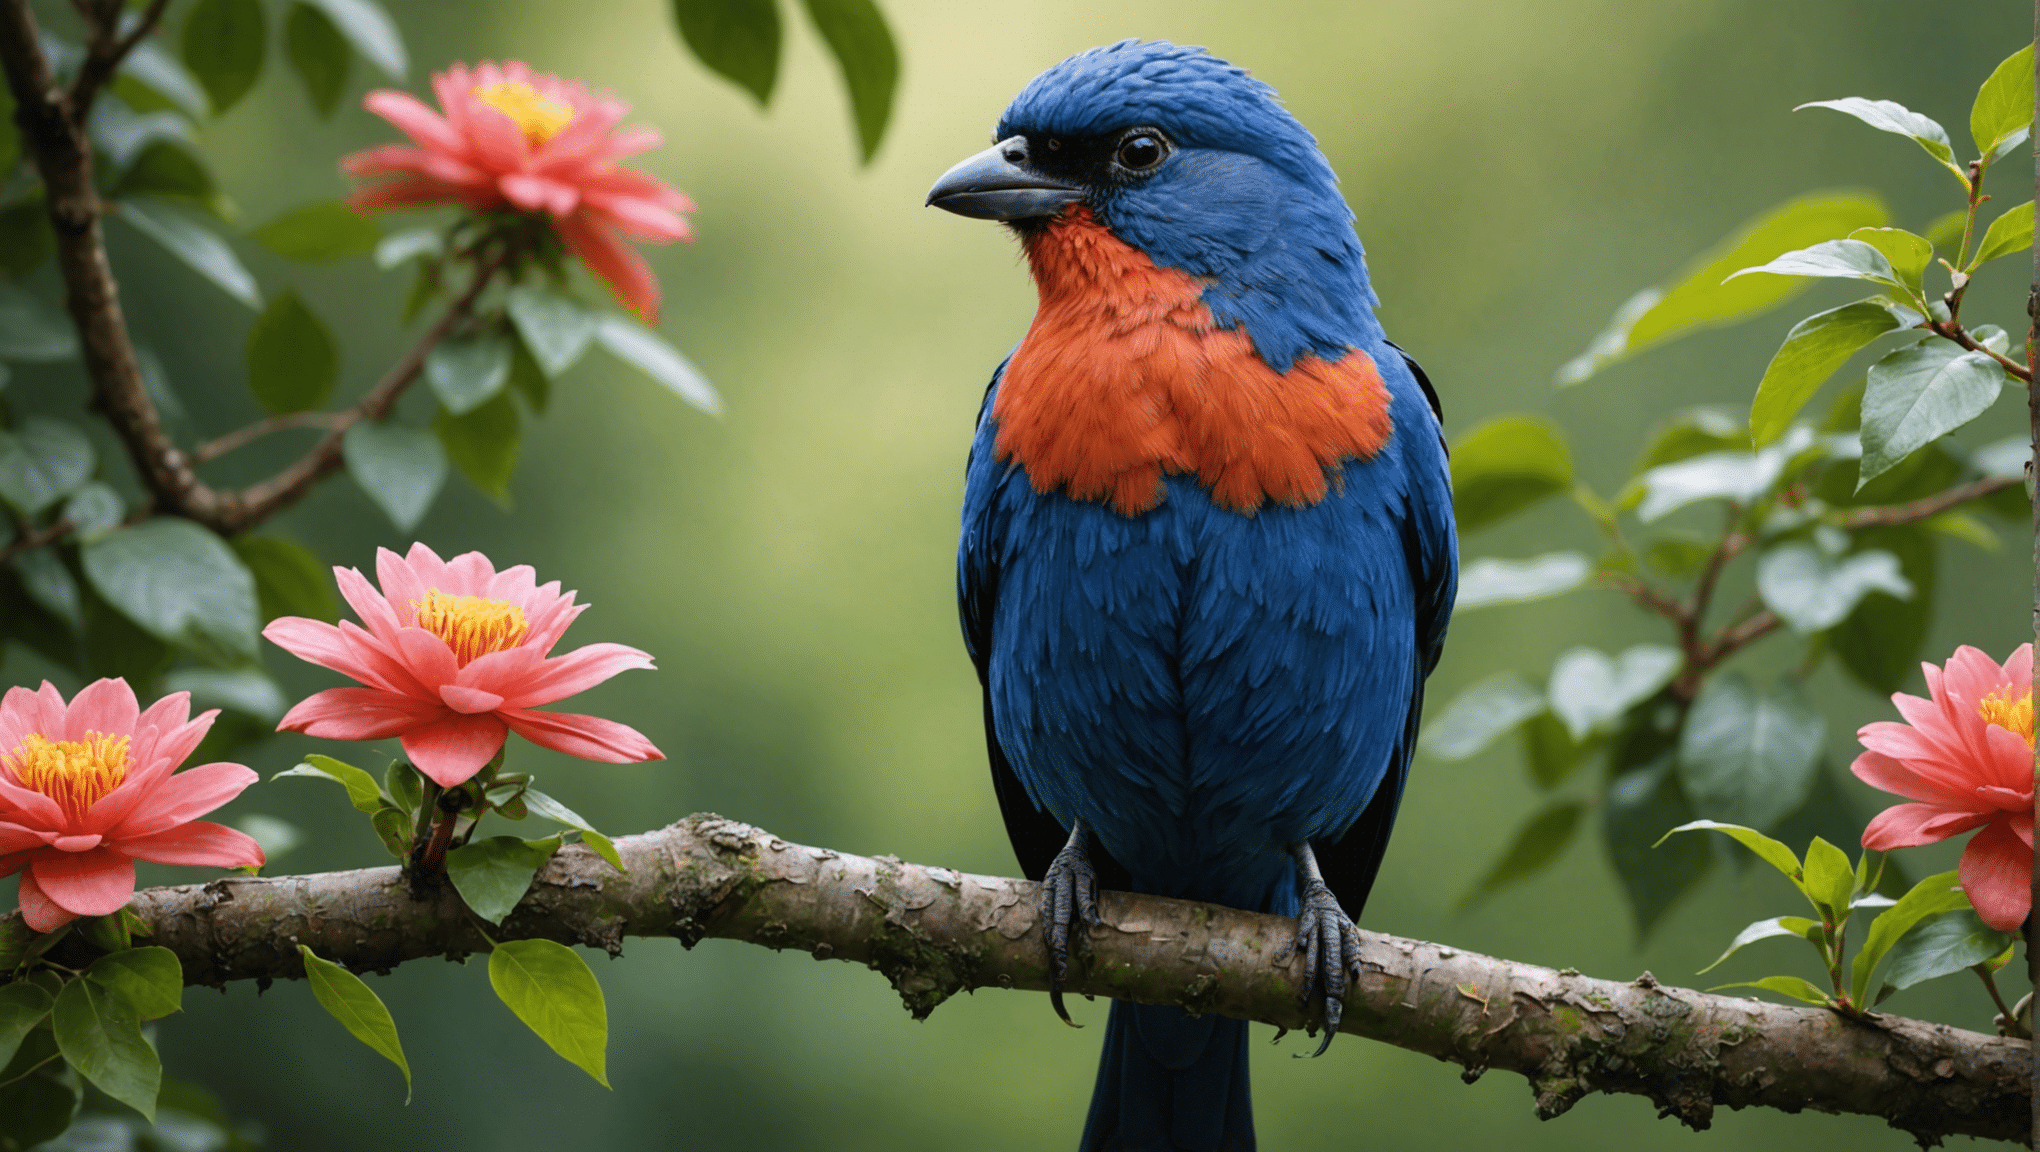 sú škaredé vtáky skutočne krásne? zistite v tomto fascinujúcom prieskume skrytej krásy prírody a prekvapivej pravdy o kráse zdanlivo škaredých vtákov.